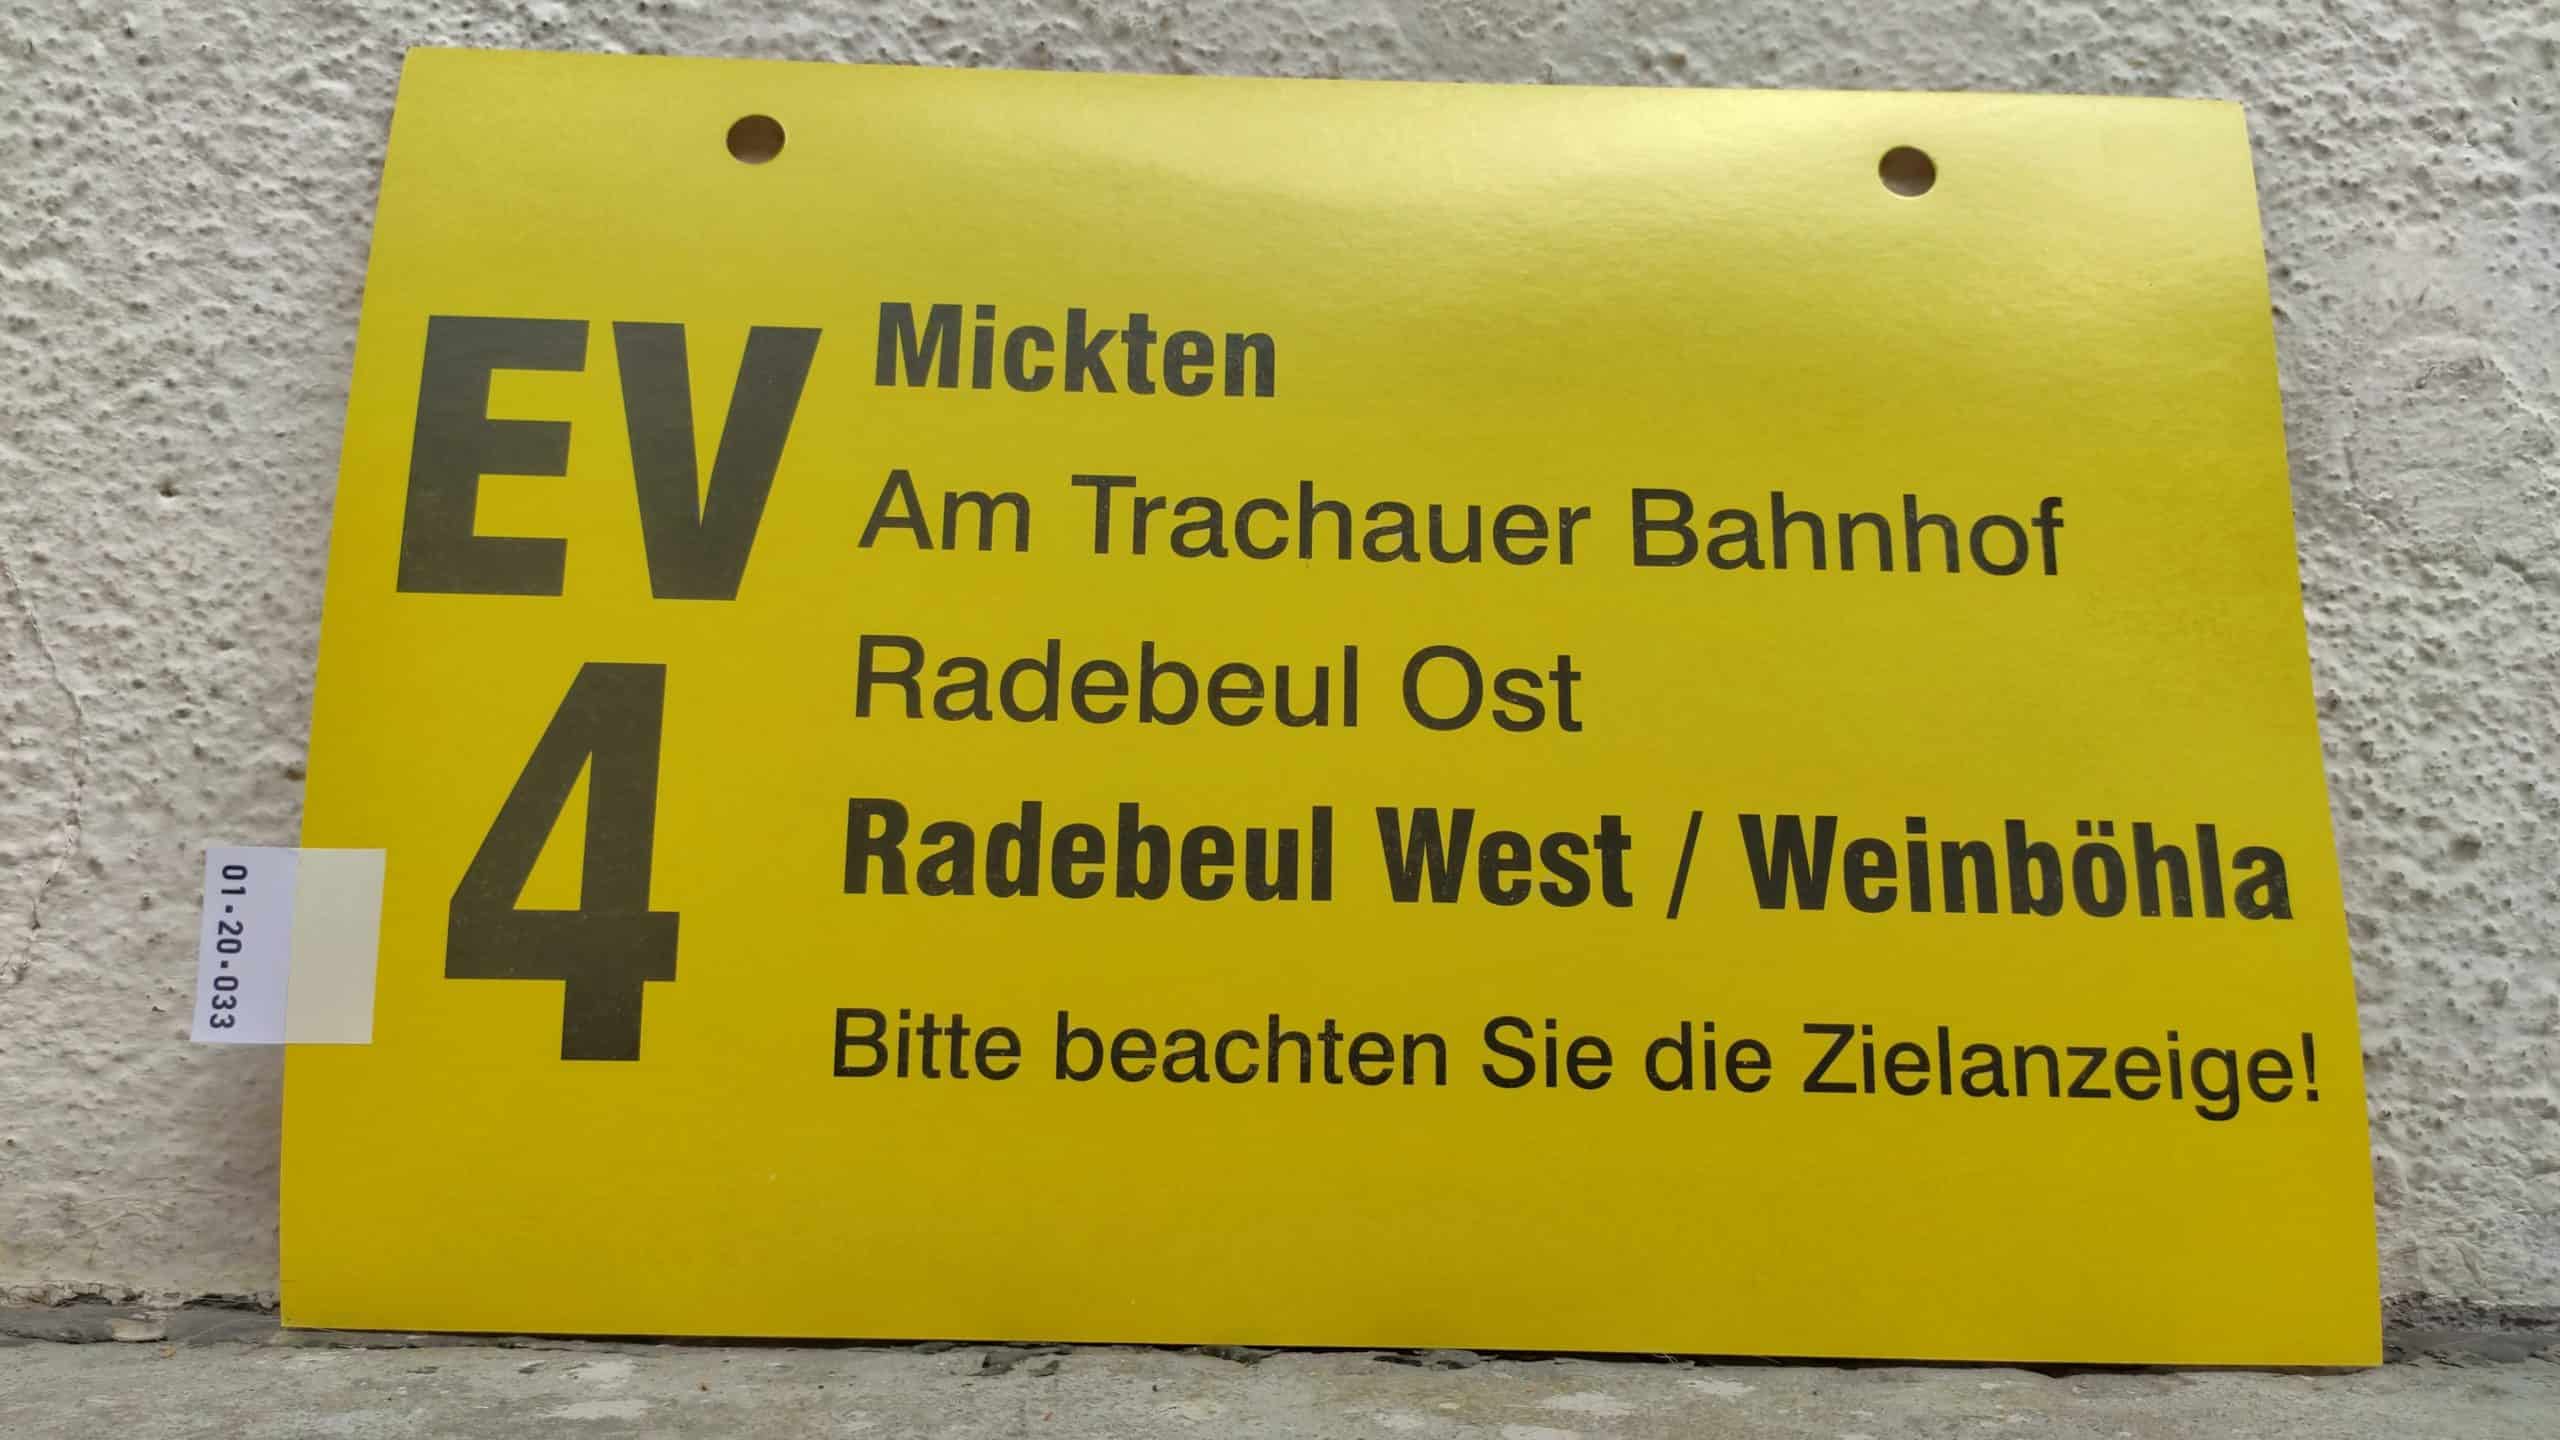 EV 4 Mickten – Radebeul West / Weinböhla